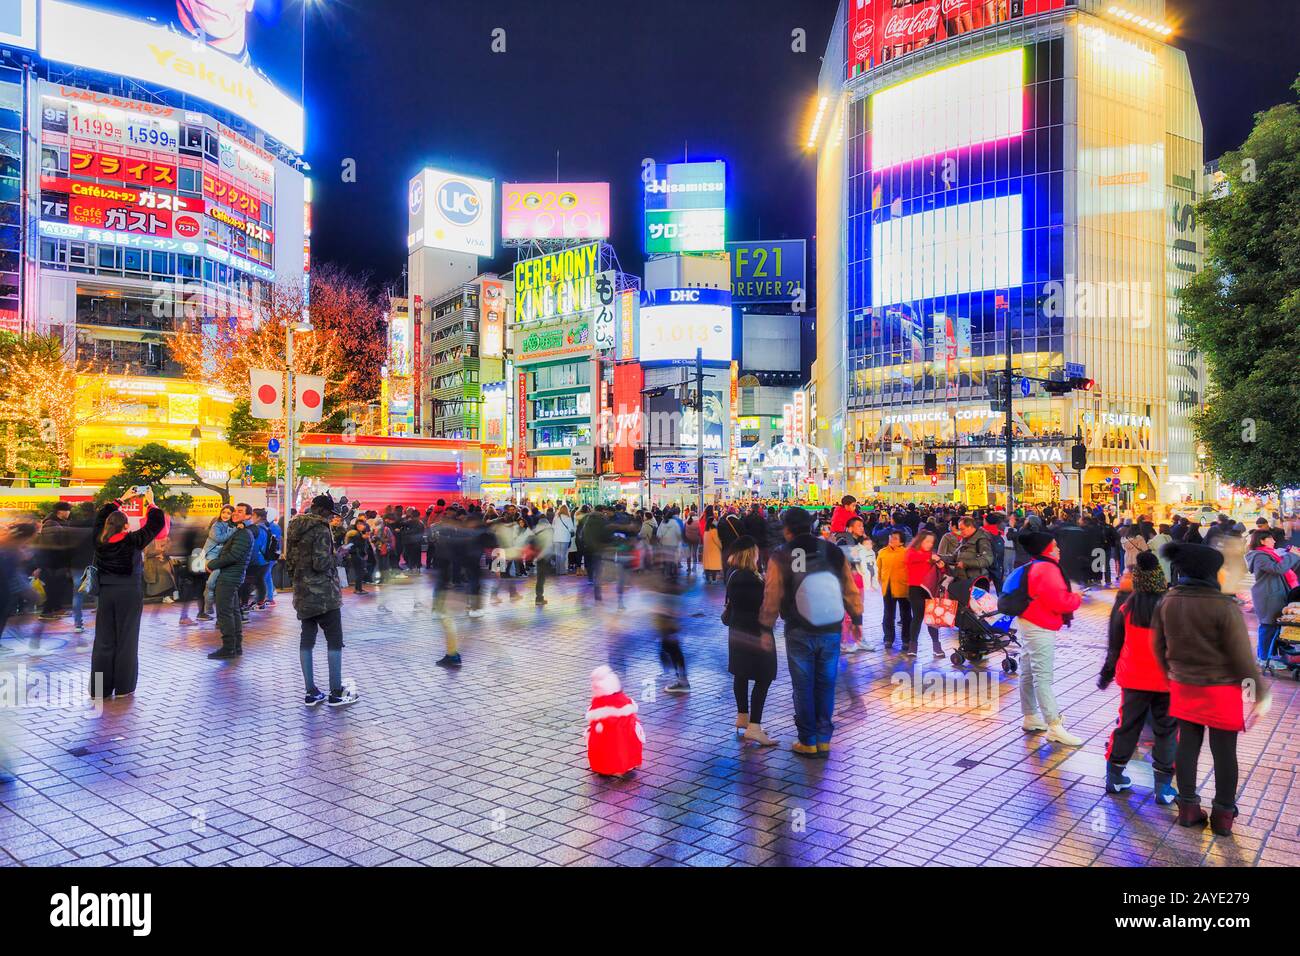 Shibuya, TOKYO, JAPON - 29 décembre 2019: Célèbre station Shibuya et passage de rue dans la ville de Tokyo avec des gens qui marchent autour de la place de la gare. Banque D'Images